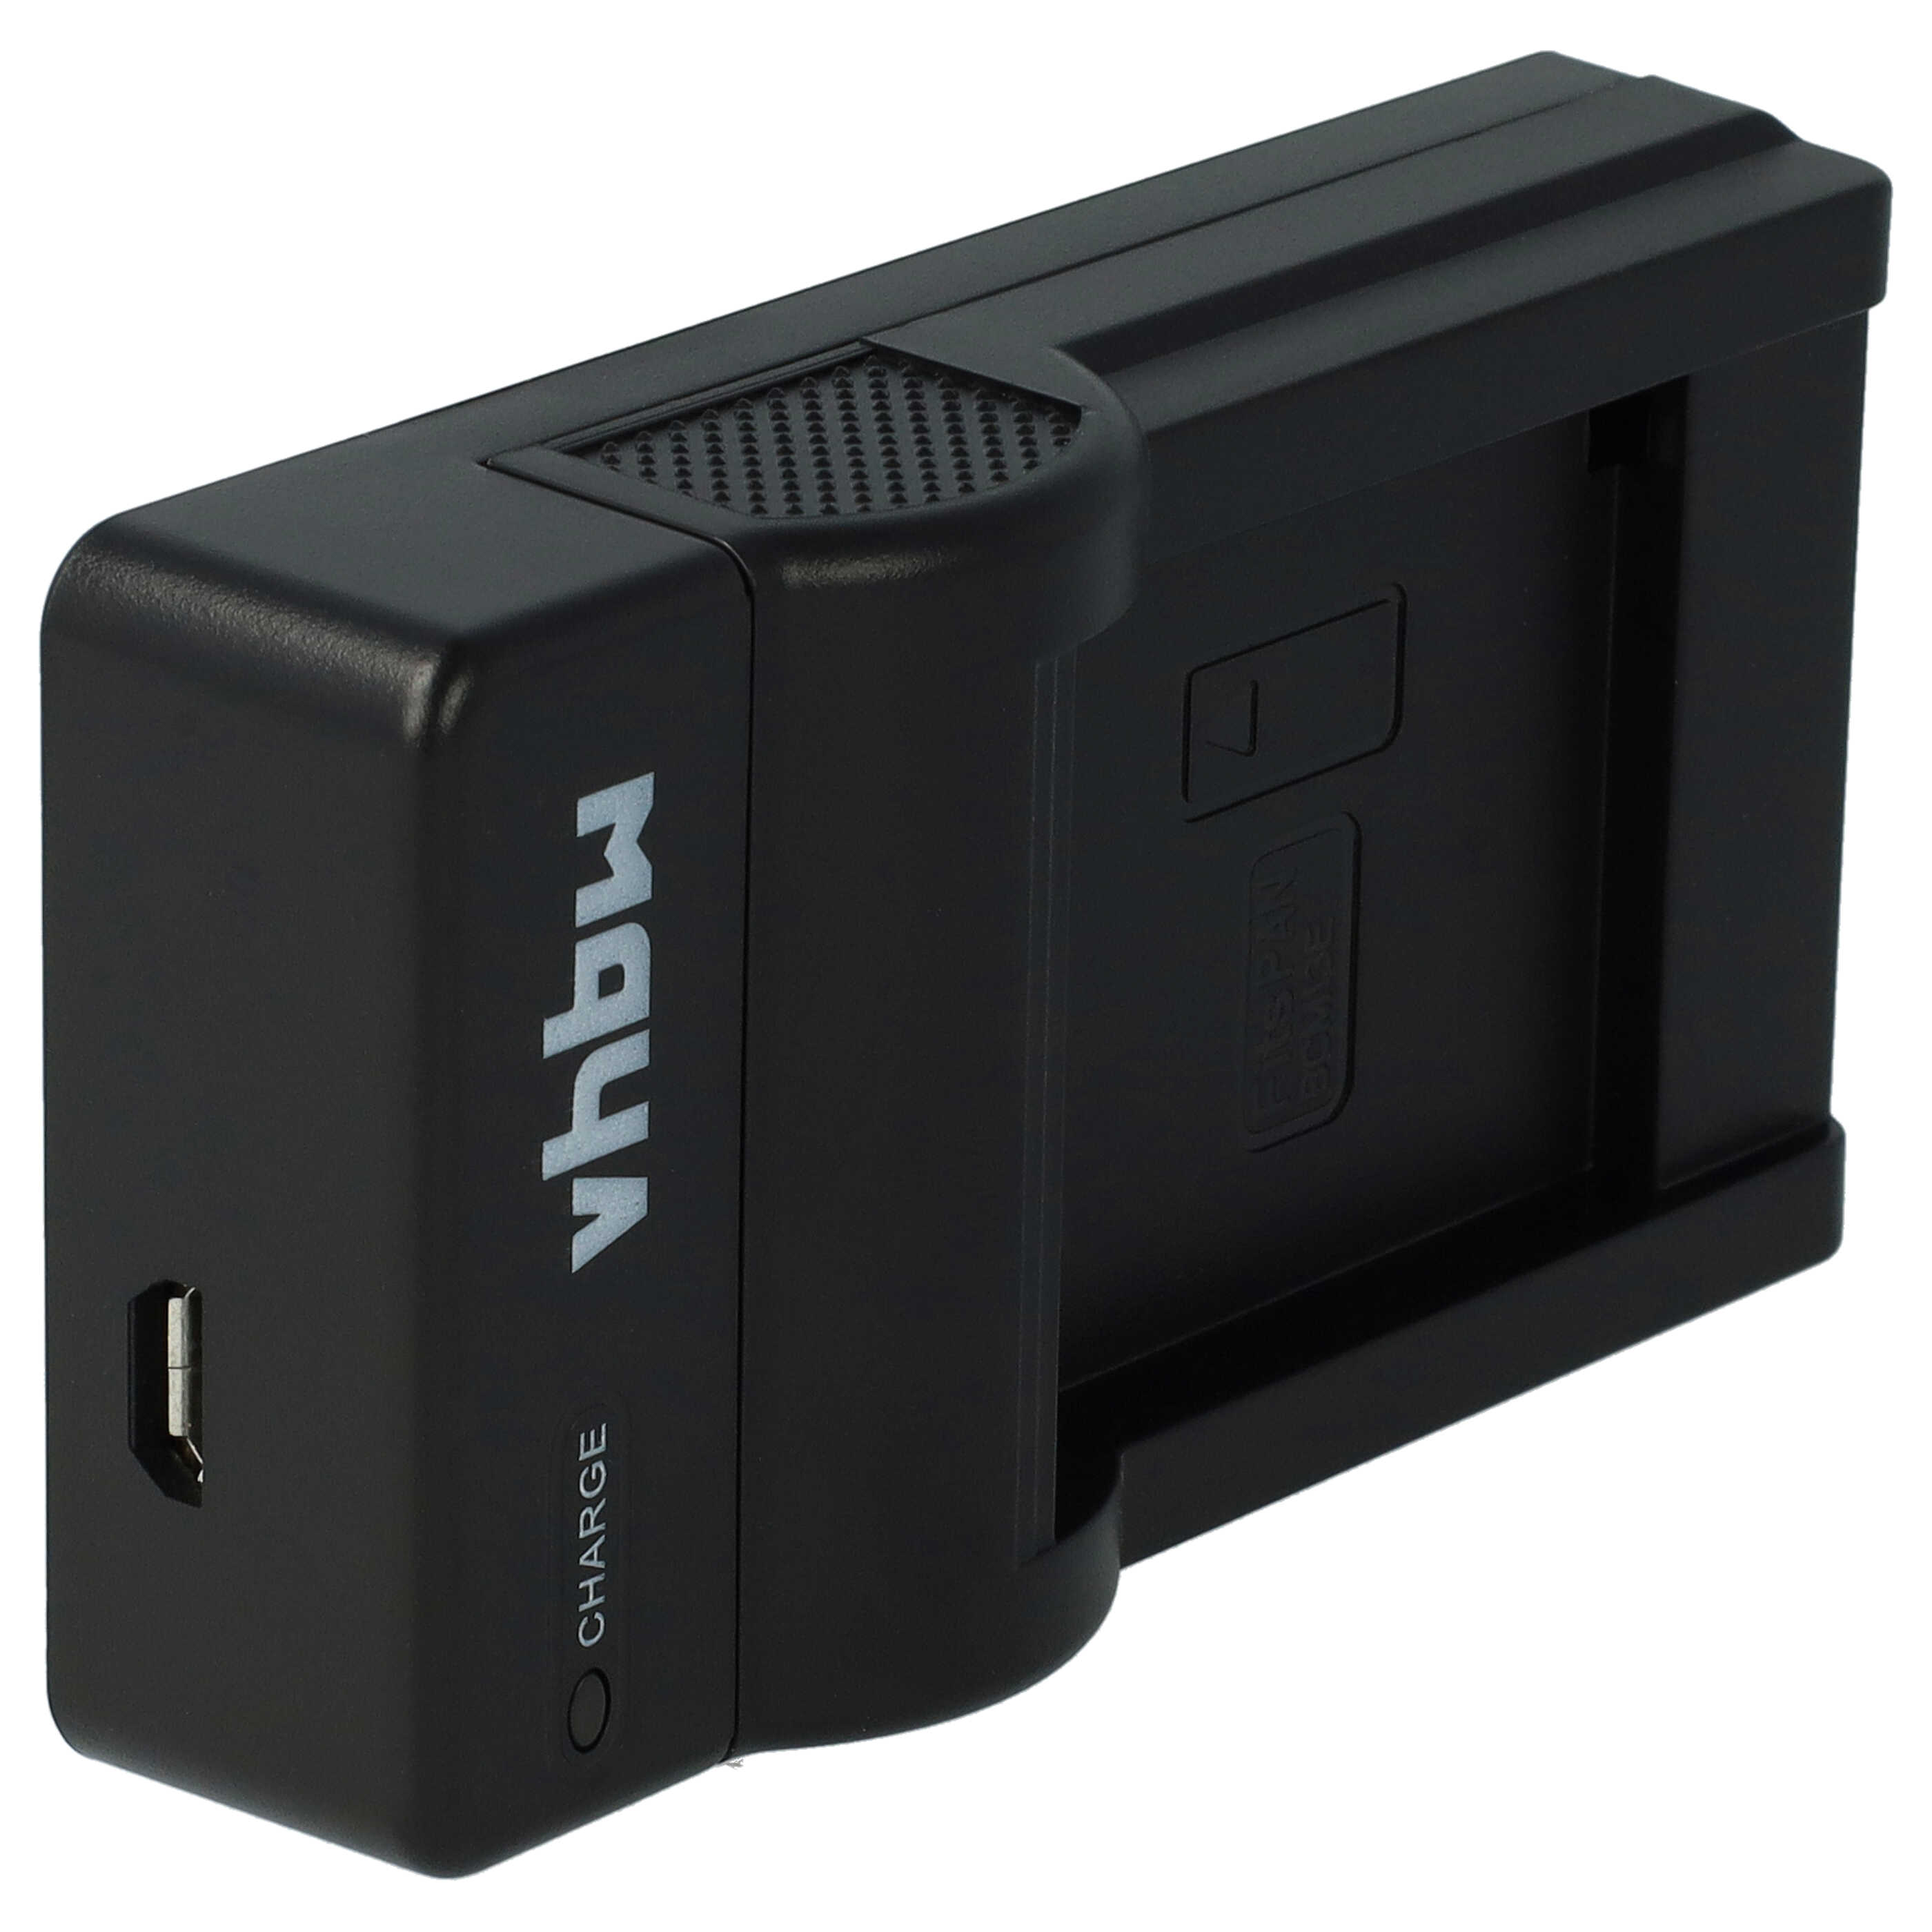 Caricabatterie per fotocamera Lumix - 0,5A 4,2V 43,5cm